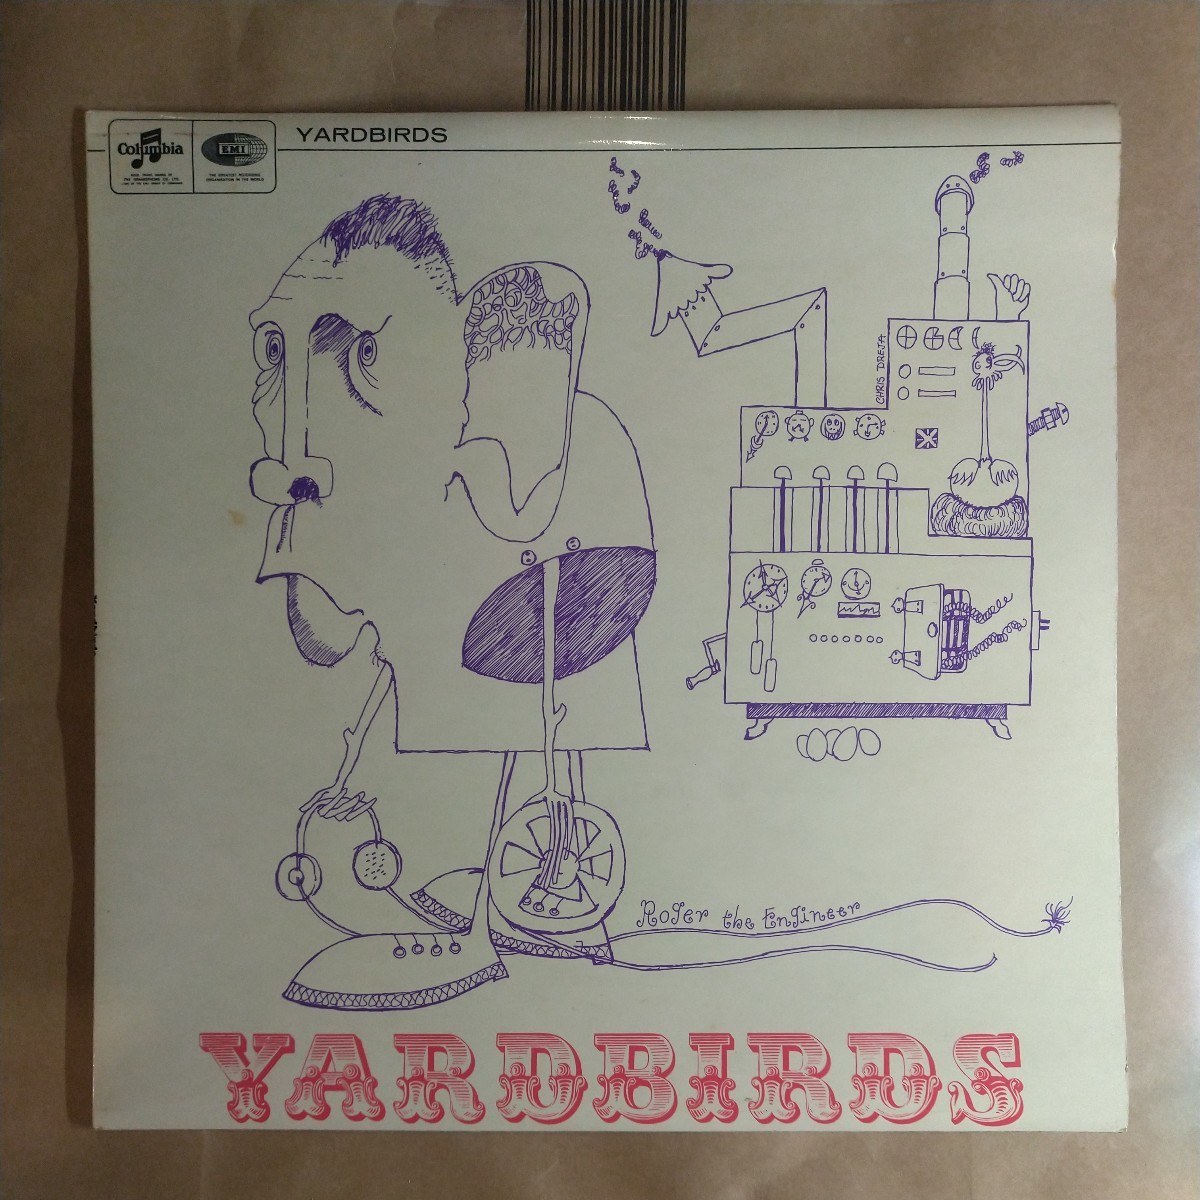 ヤードバーズ「the yardbirds Roger the engineer」英LP 1976年版 album★★blues rock jeff beck_画像1